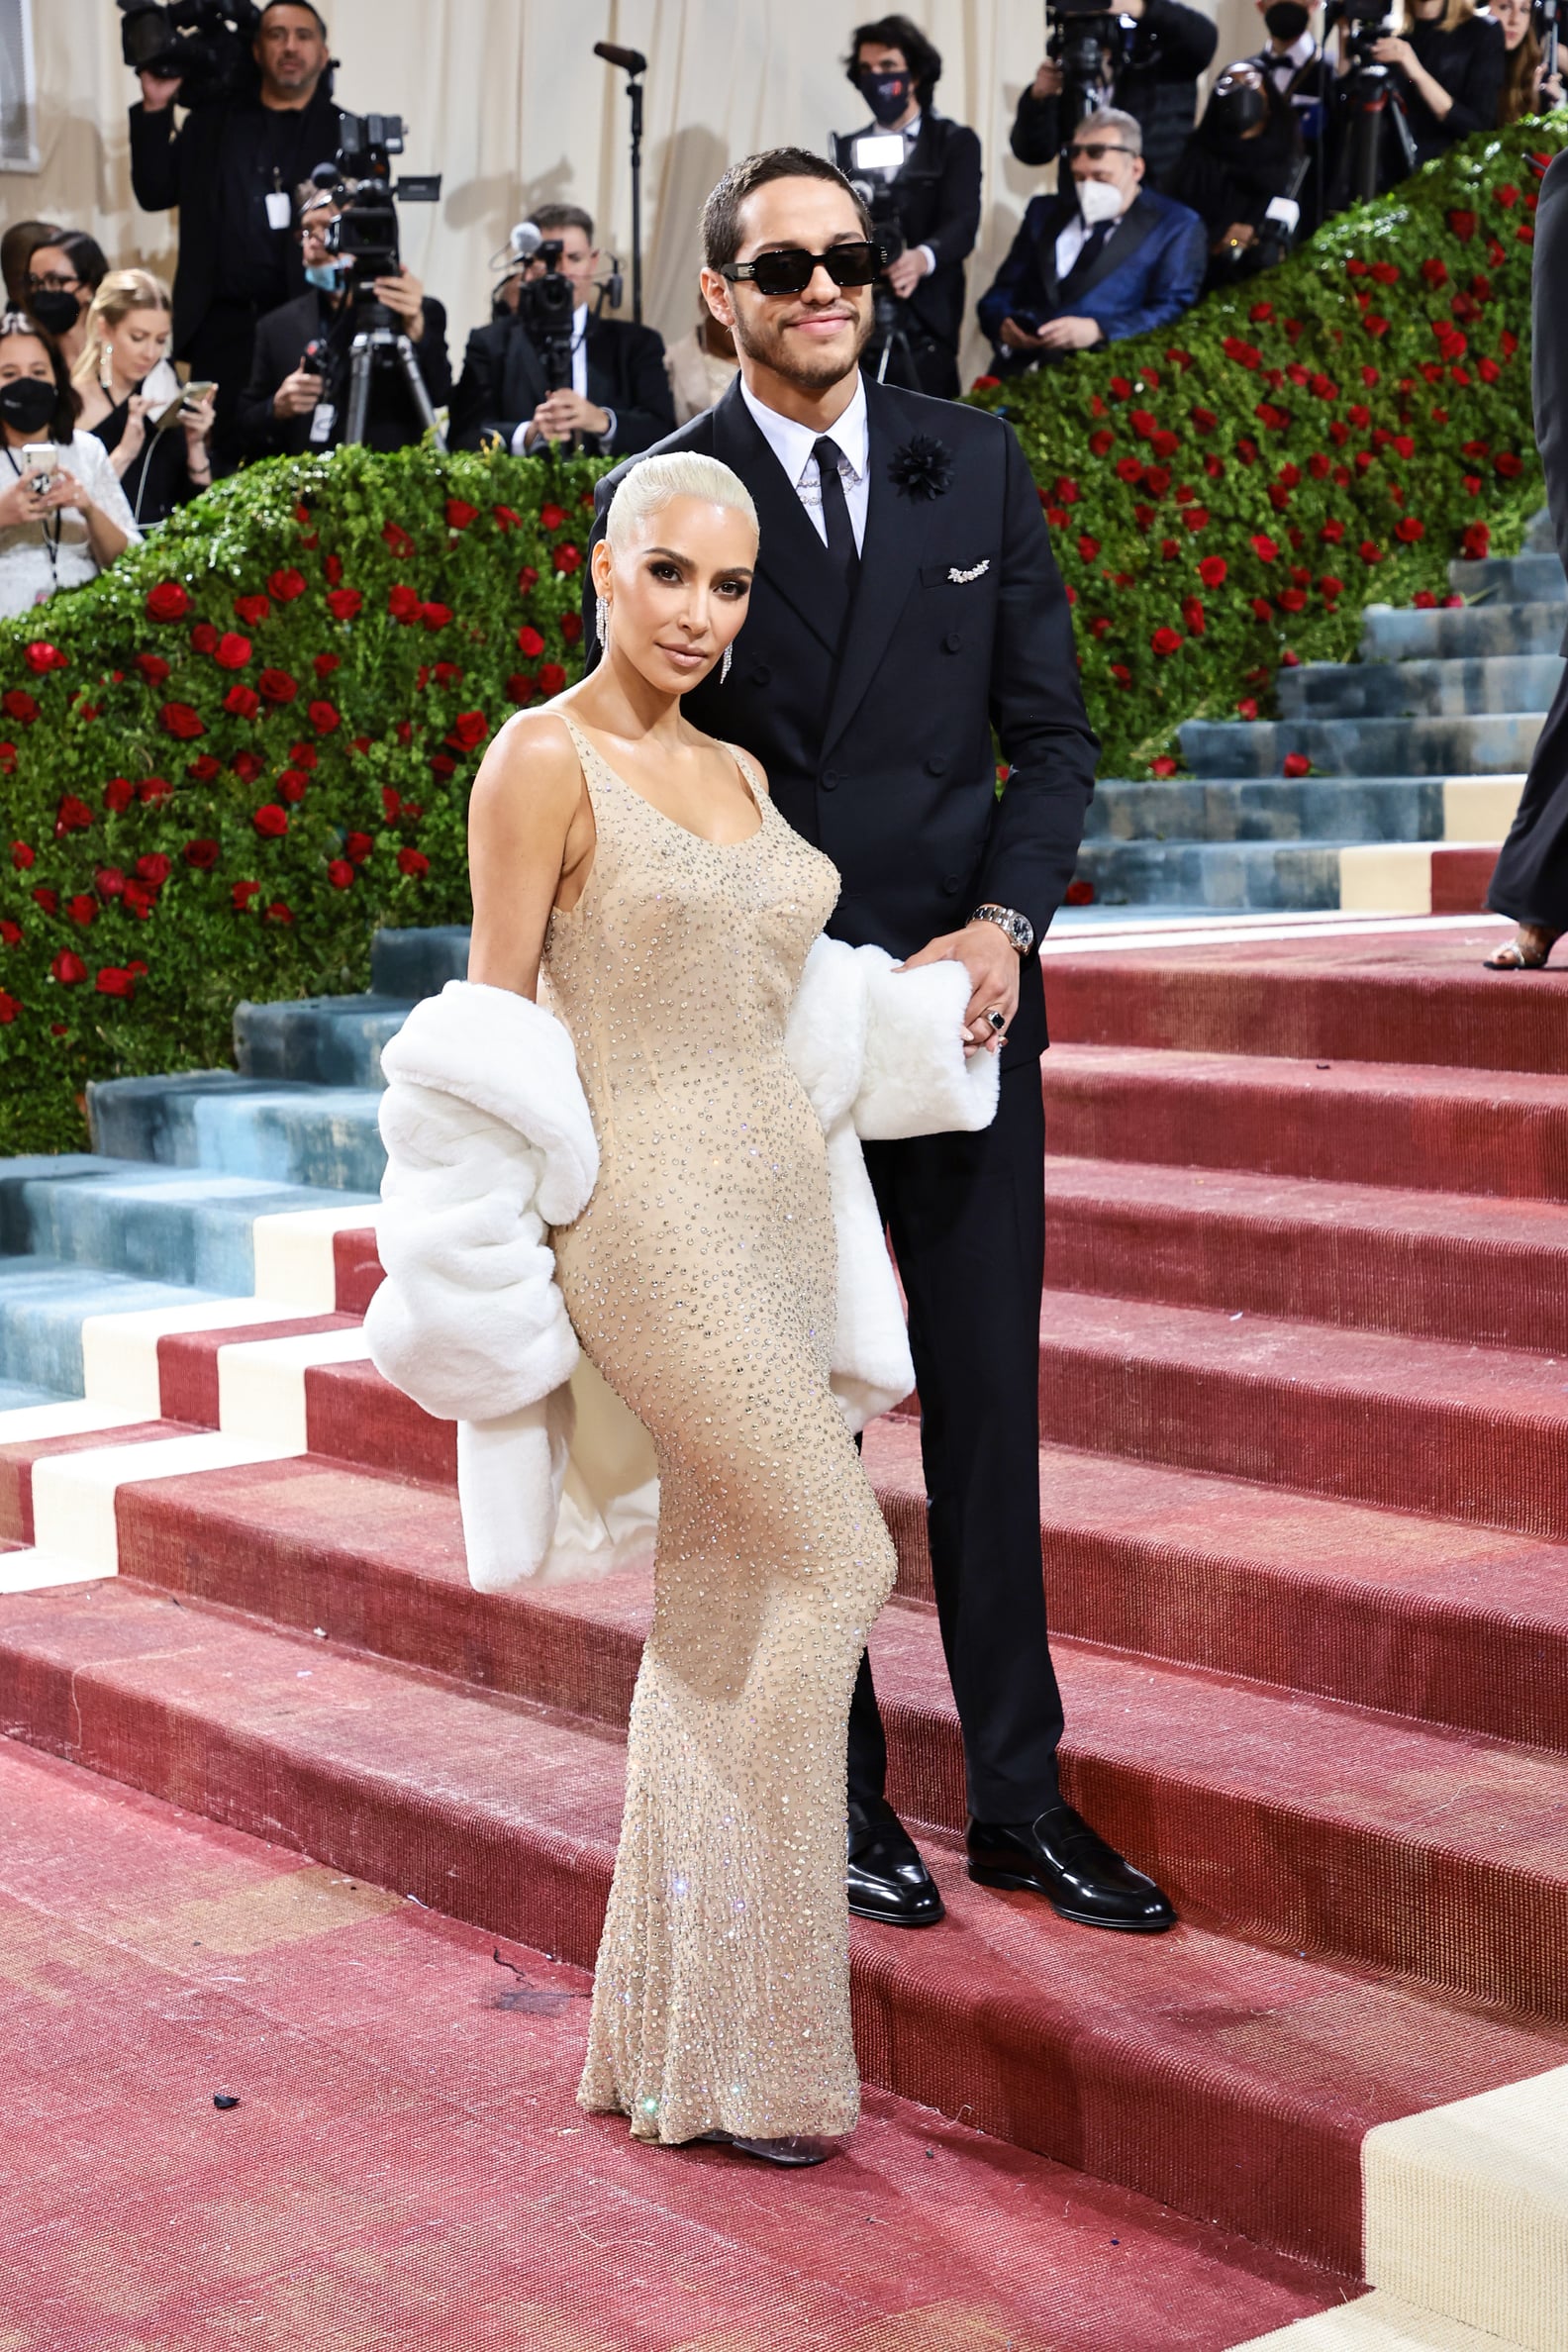 Kim Kardashian and Pete Davidson at the Met Gala 2022 | POPSUGAR Celebrity